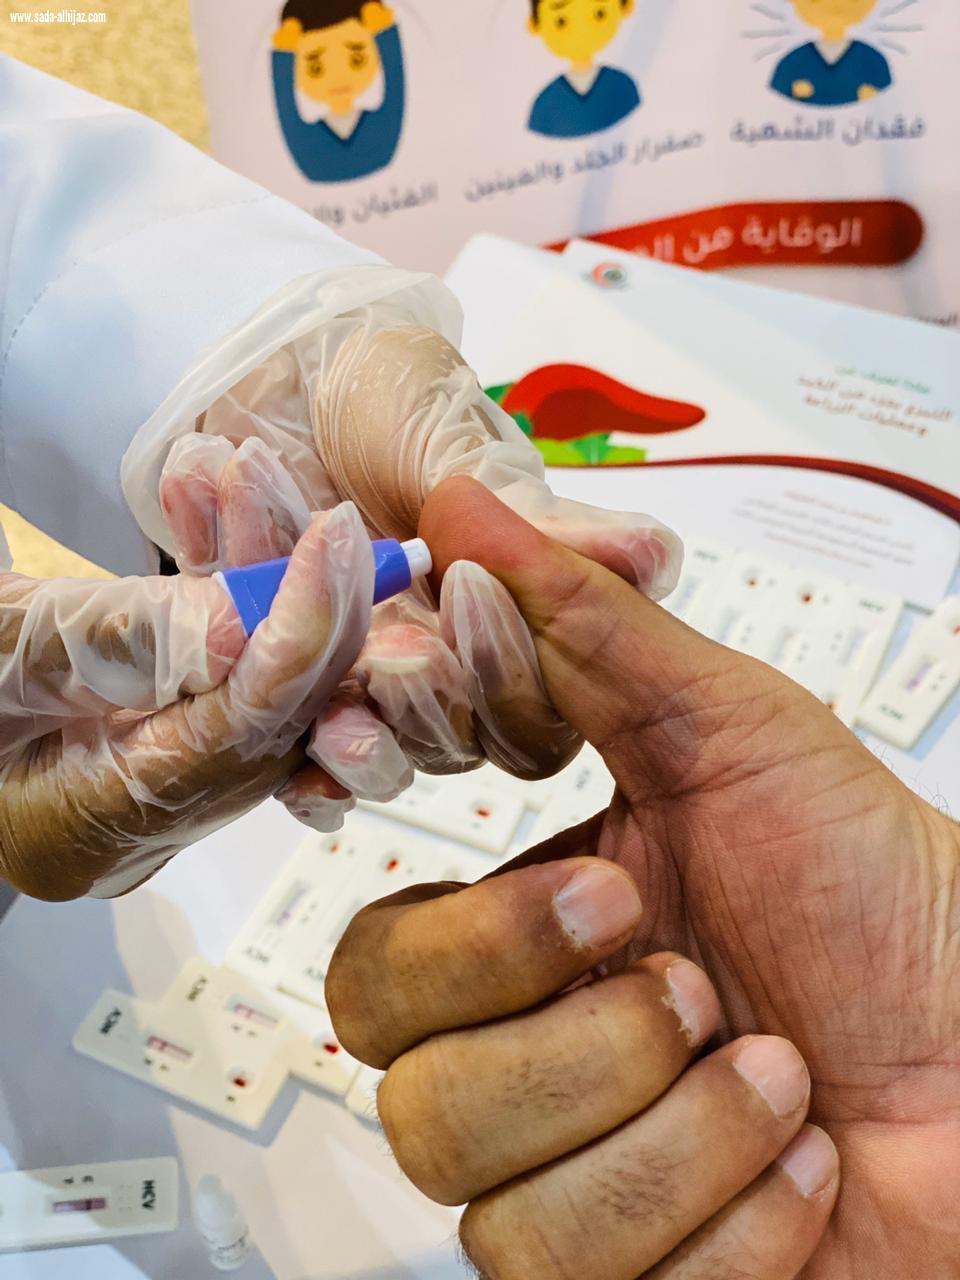 الجمعية السعودية الخيرية لمرضى الكبد كبدك بالشراكة مع فريق الوِد التطوعي تطلق معرضها التوعوي بتيرا مول الطائف 